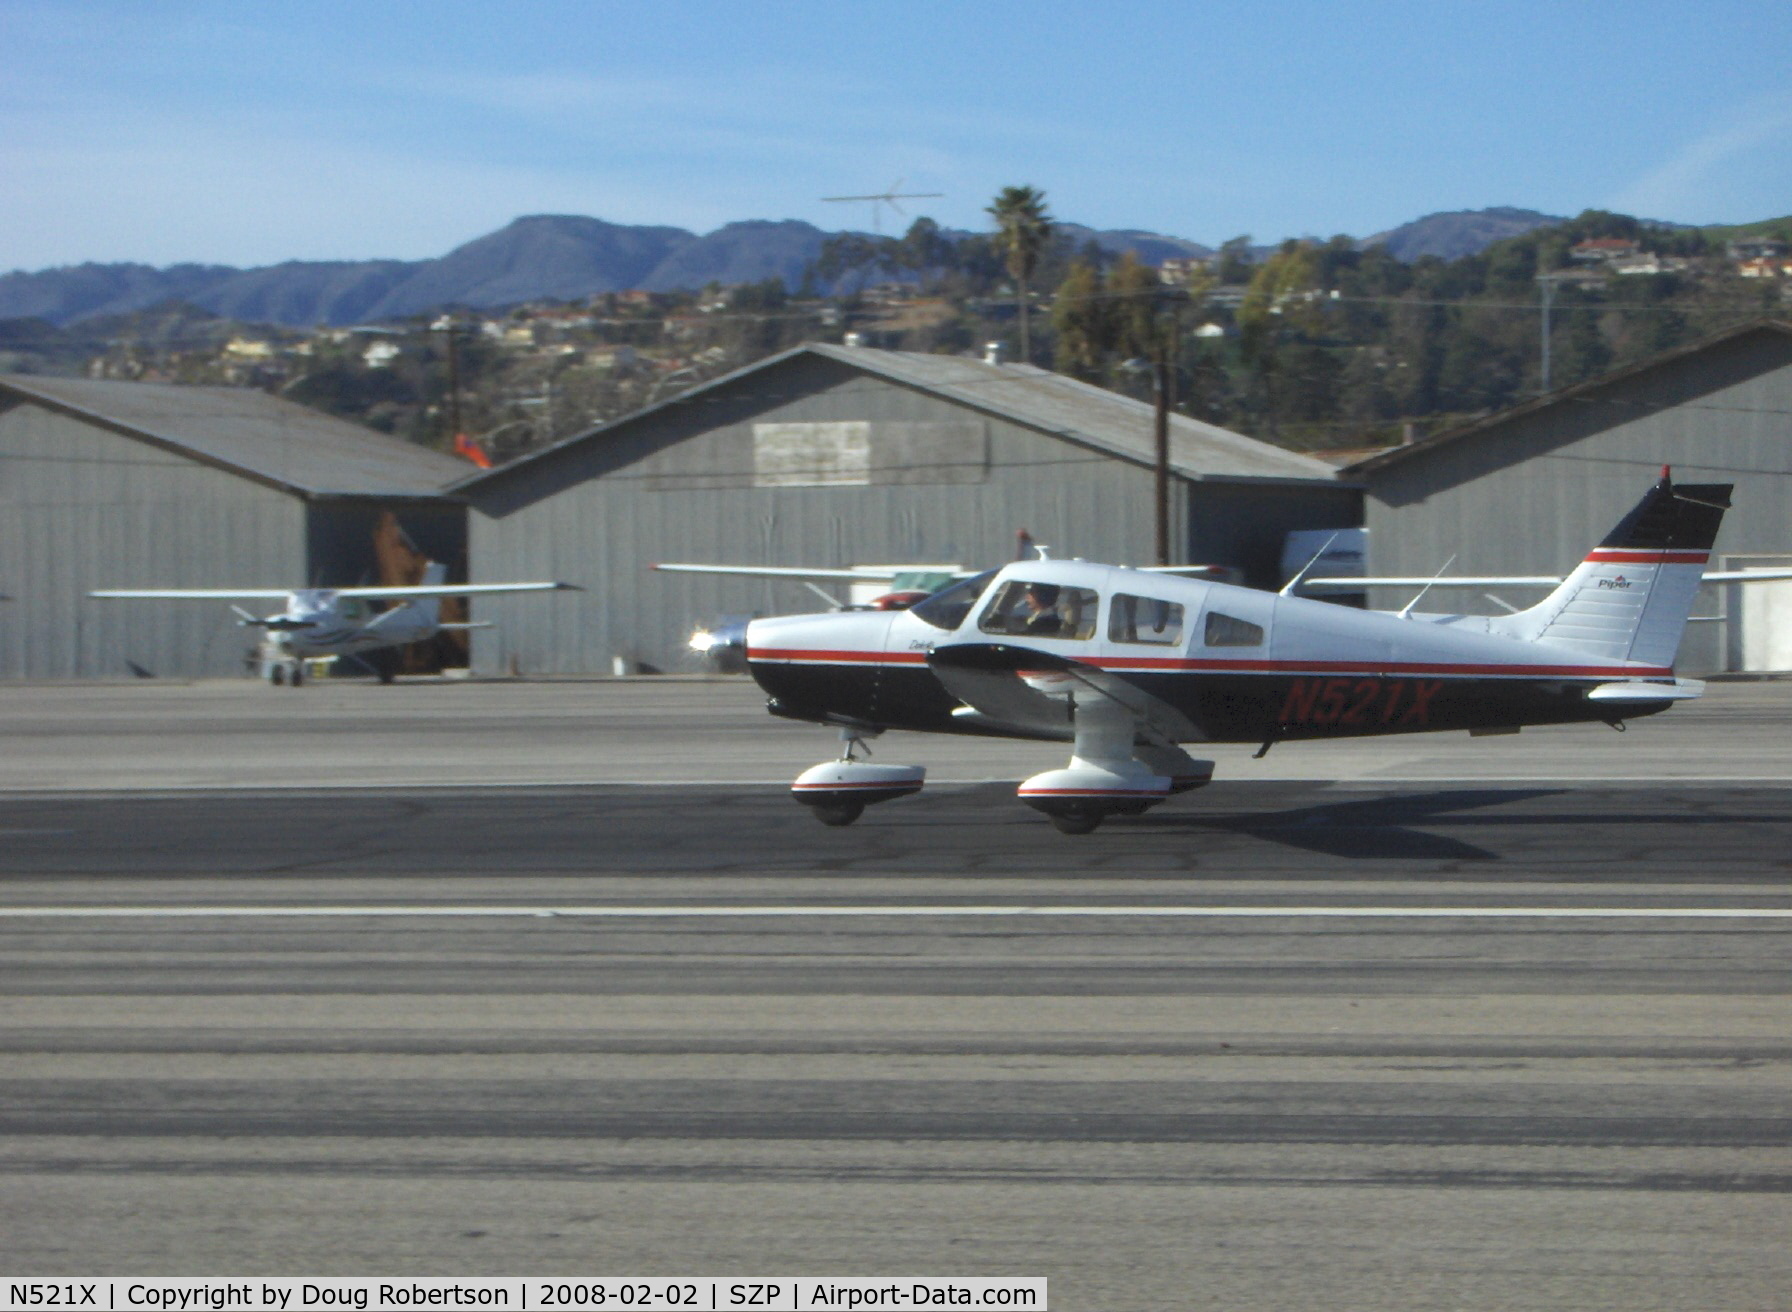 N521X, 1978 Piper PA-28-236 Dakota C/N 28-7911038, 1978 Piper PA-28-236 DAKOTA, Lycoming O-540-J3A5D 235 Hp, near touchdown Rwy 22